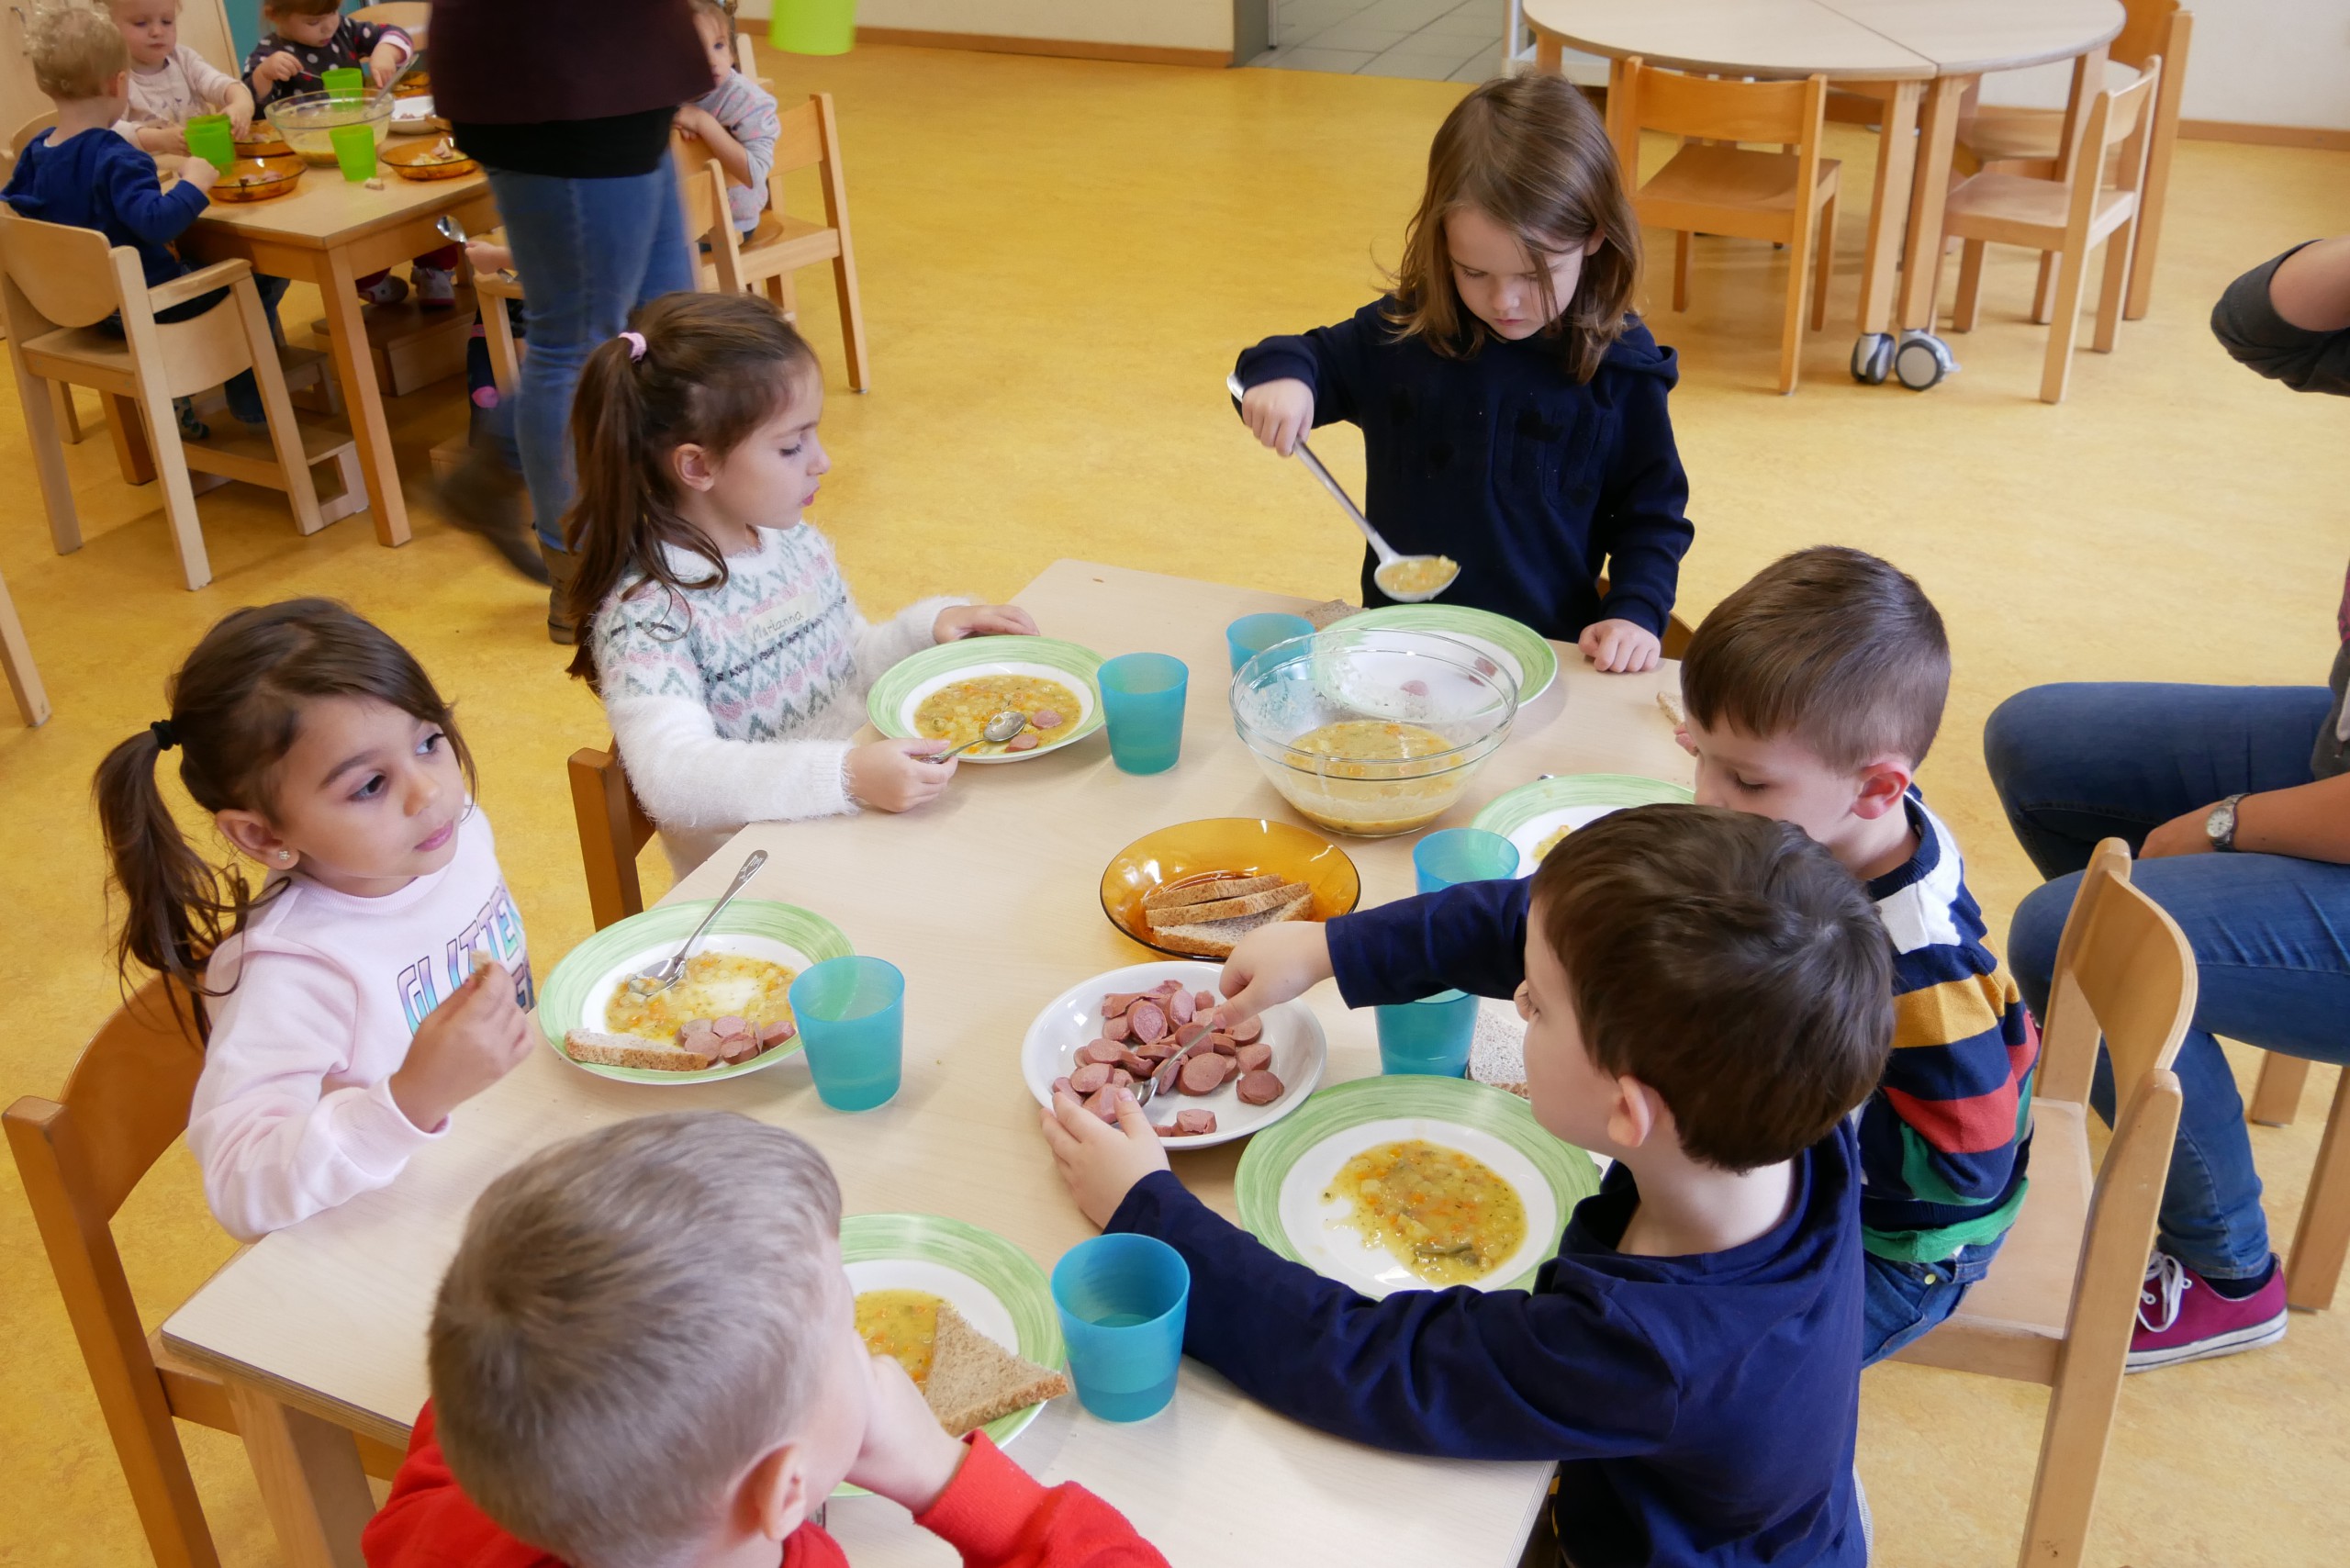 Kinder sitzen beim Mittagessen um einen Tisch und schöpfen sich selbständig das Essen auf den Teller